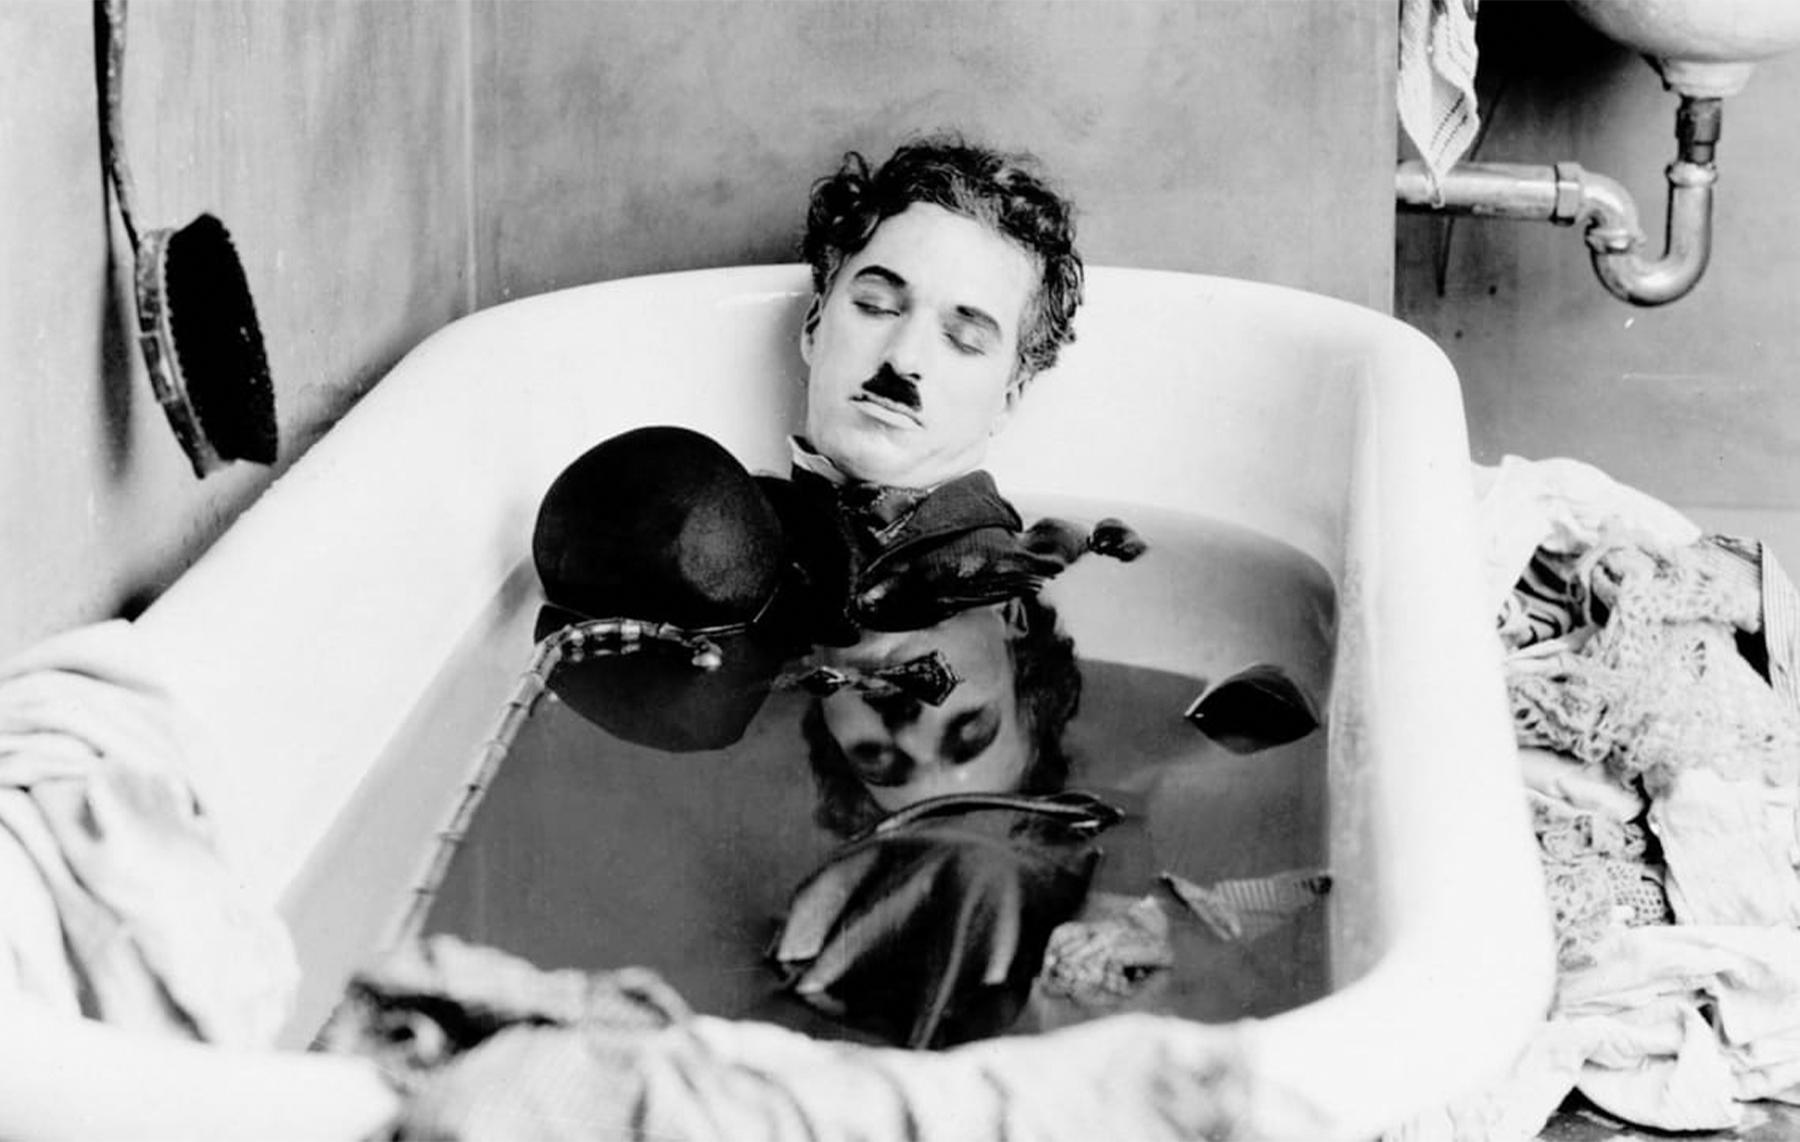 Проект «Киноджаз». Показ фильмов с Чарли Чаплином и Бастером Китоном